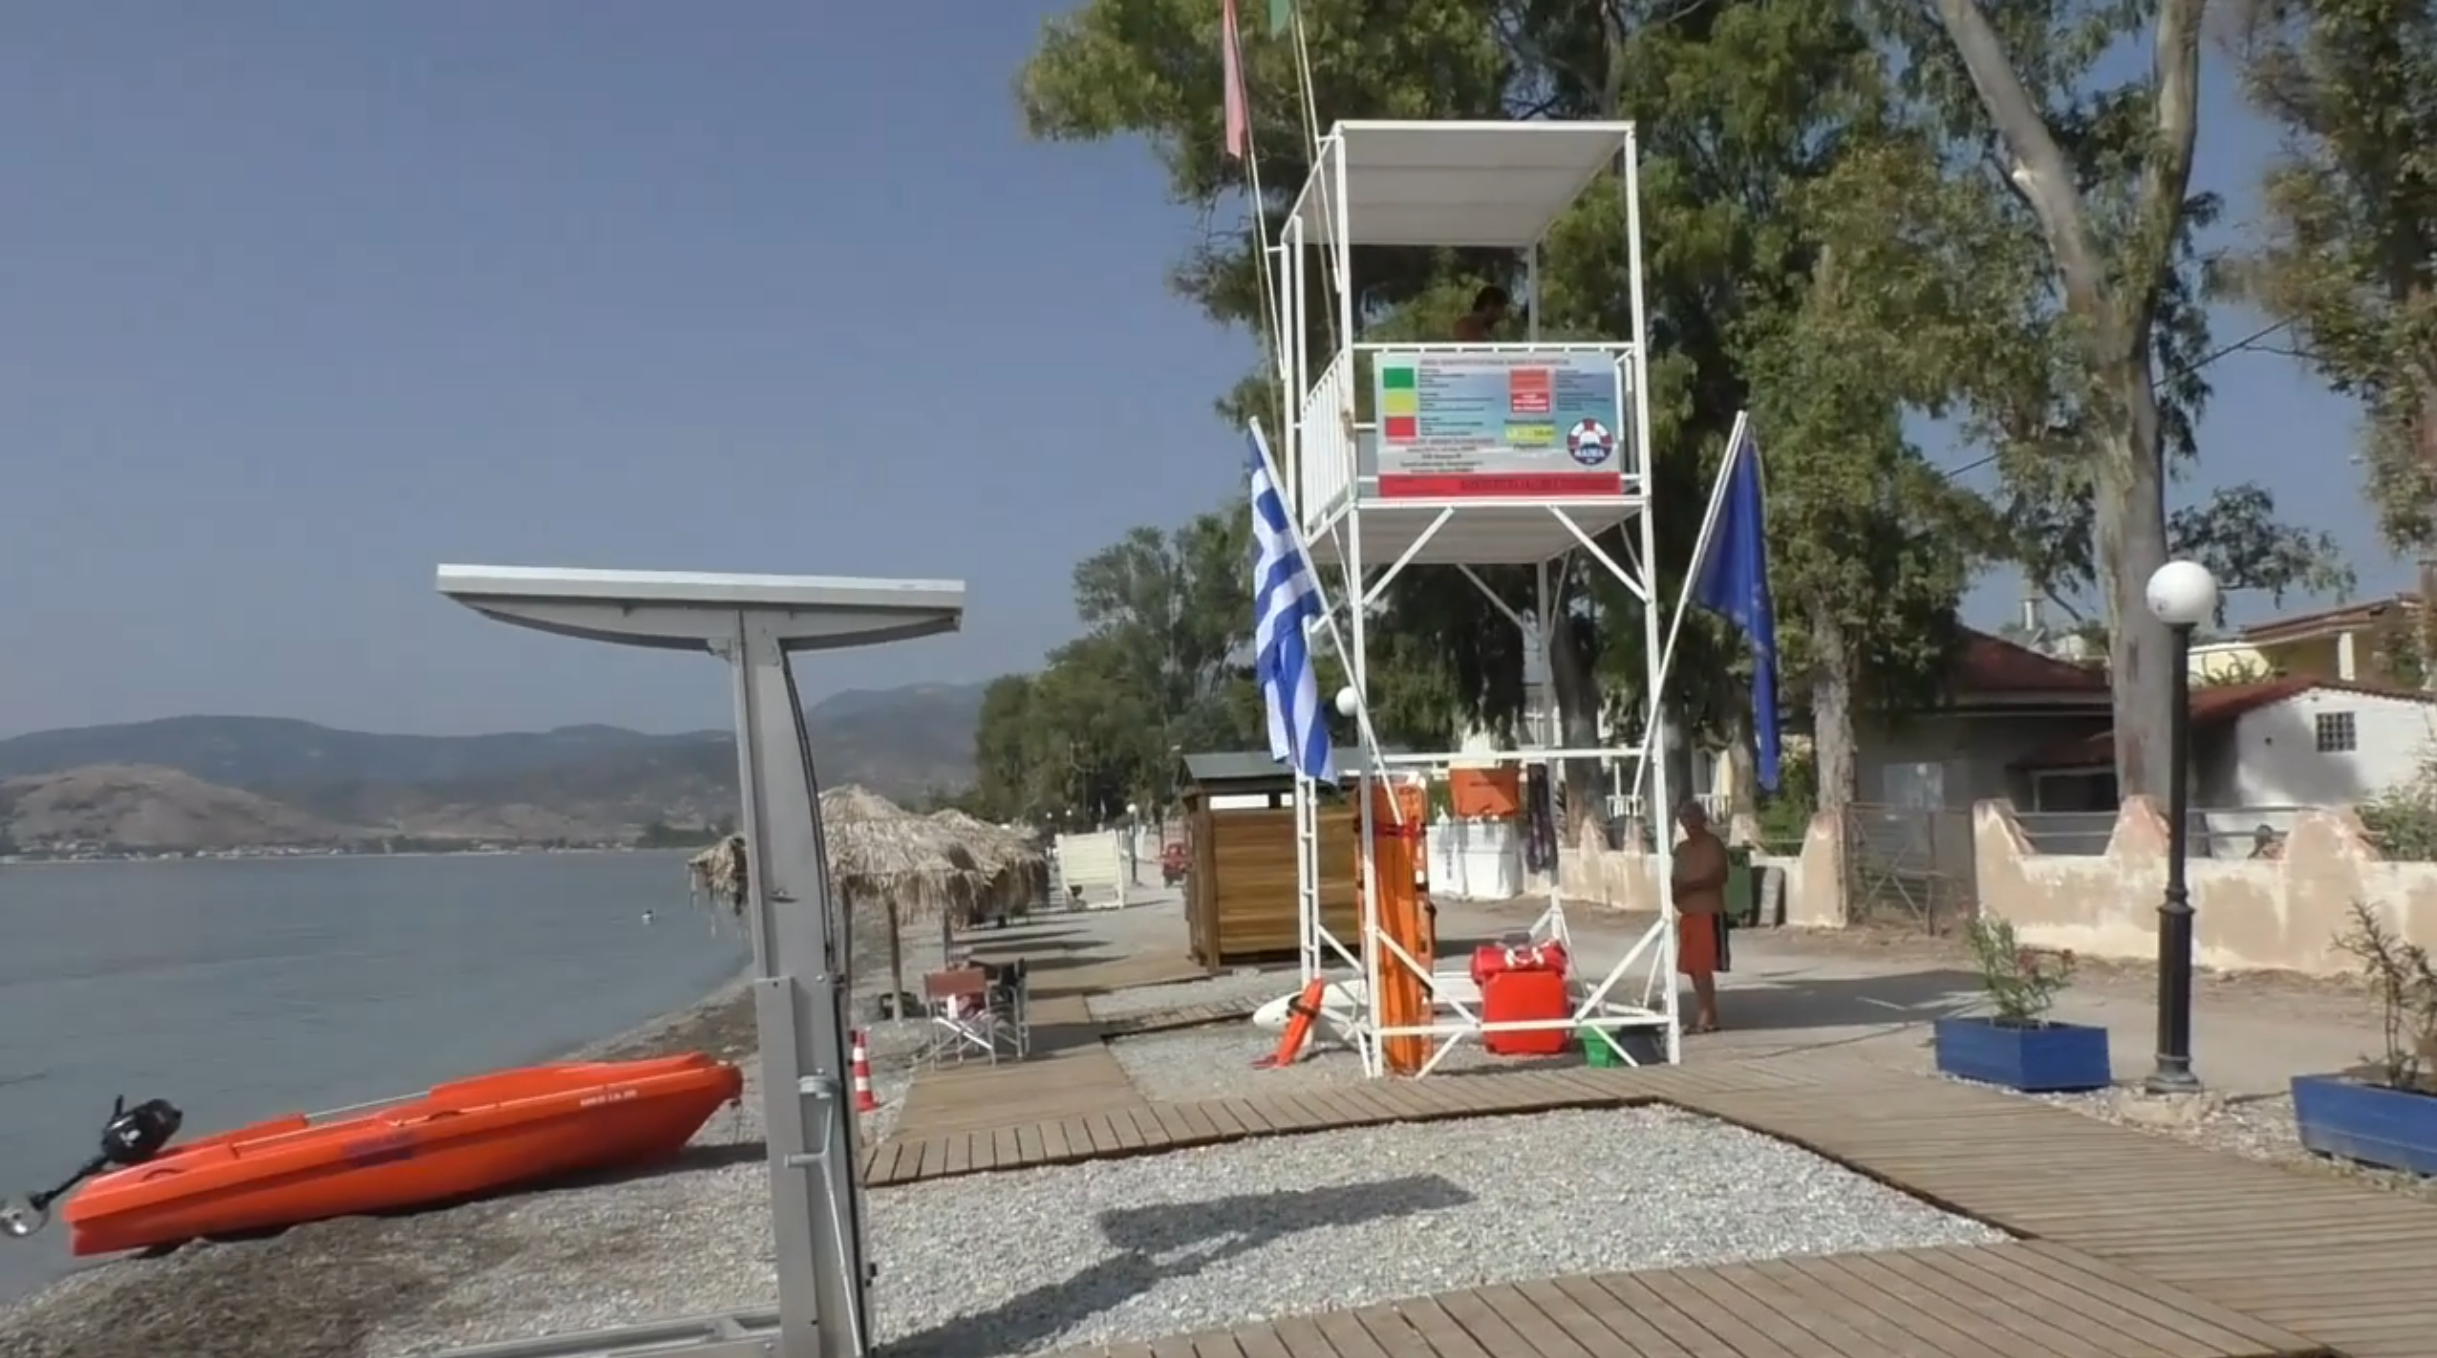 Δήμος Άργους – Μυκηνών: Προσβάσιμες για ΑΜΕΑ, με ναυαγοσώστες και όλα τα κομφόρ οι παραλίες